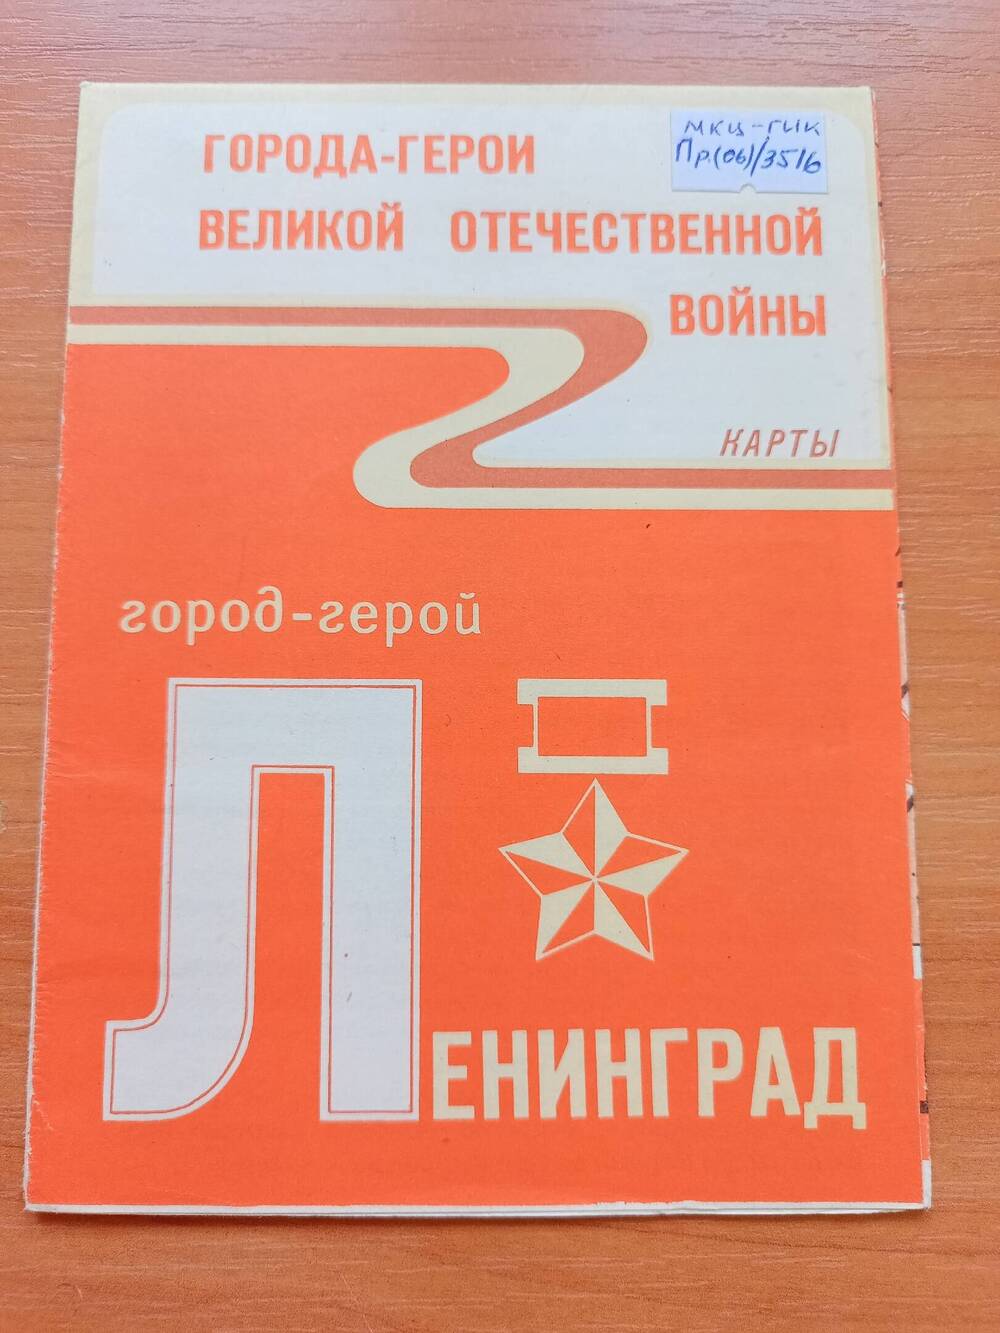 Город – герой. Ленинград. Карта, Москва, 1983 г.